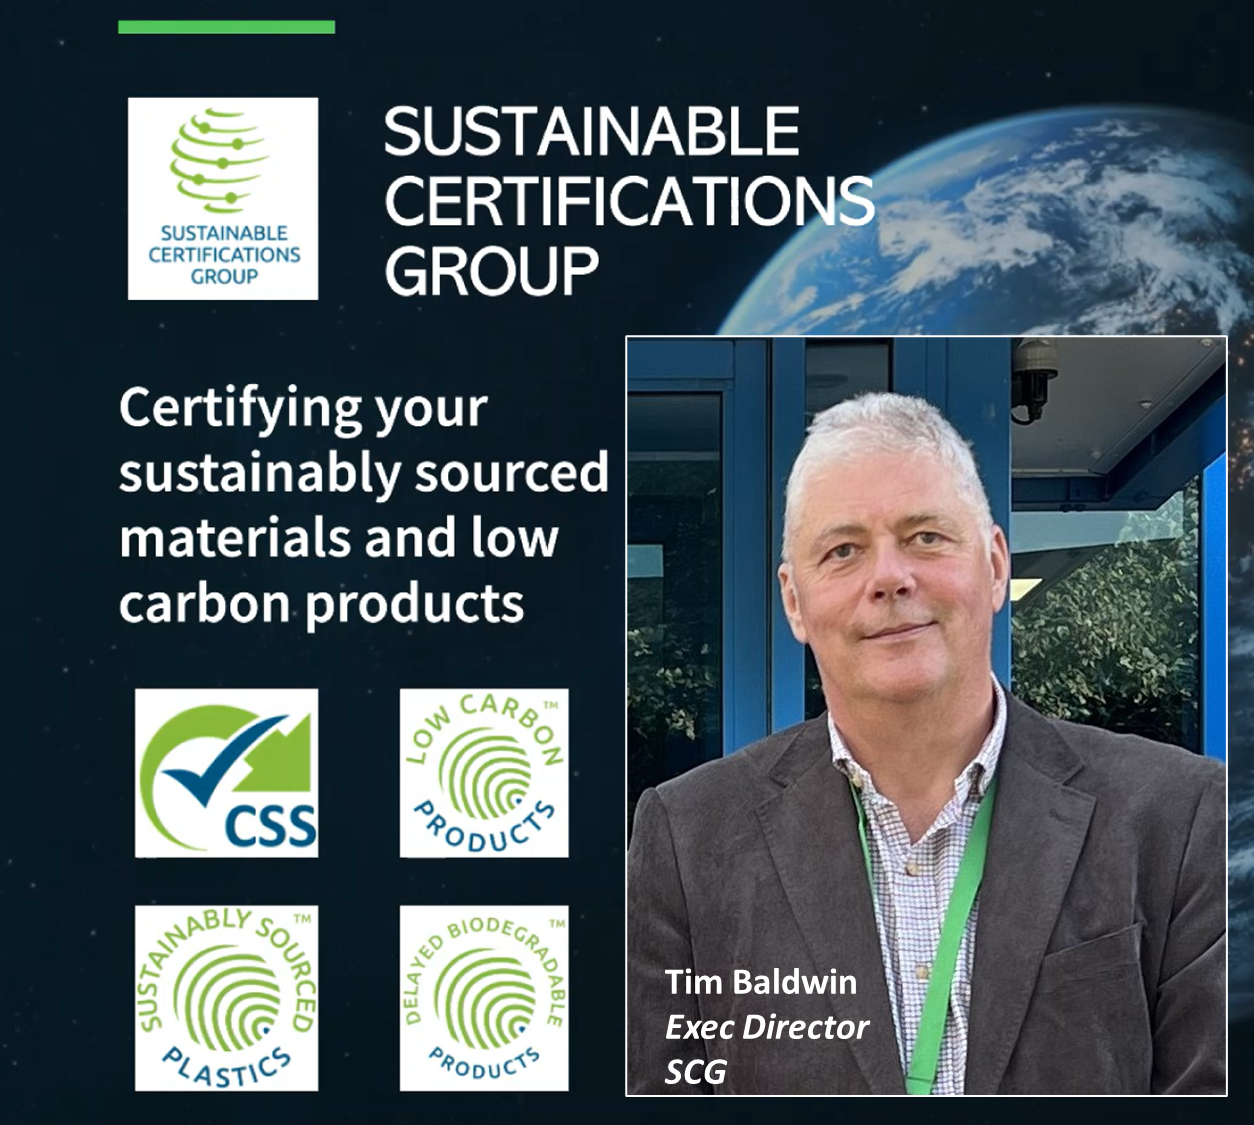 Exec Director Tim Baldwin awarding Certification to James Finlayson at Impact Recycling